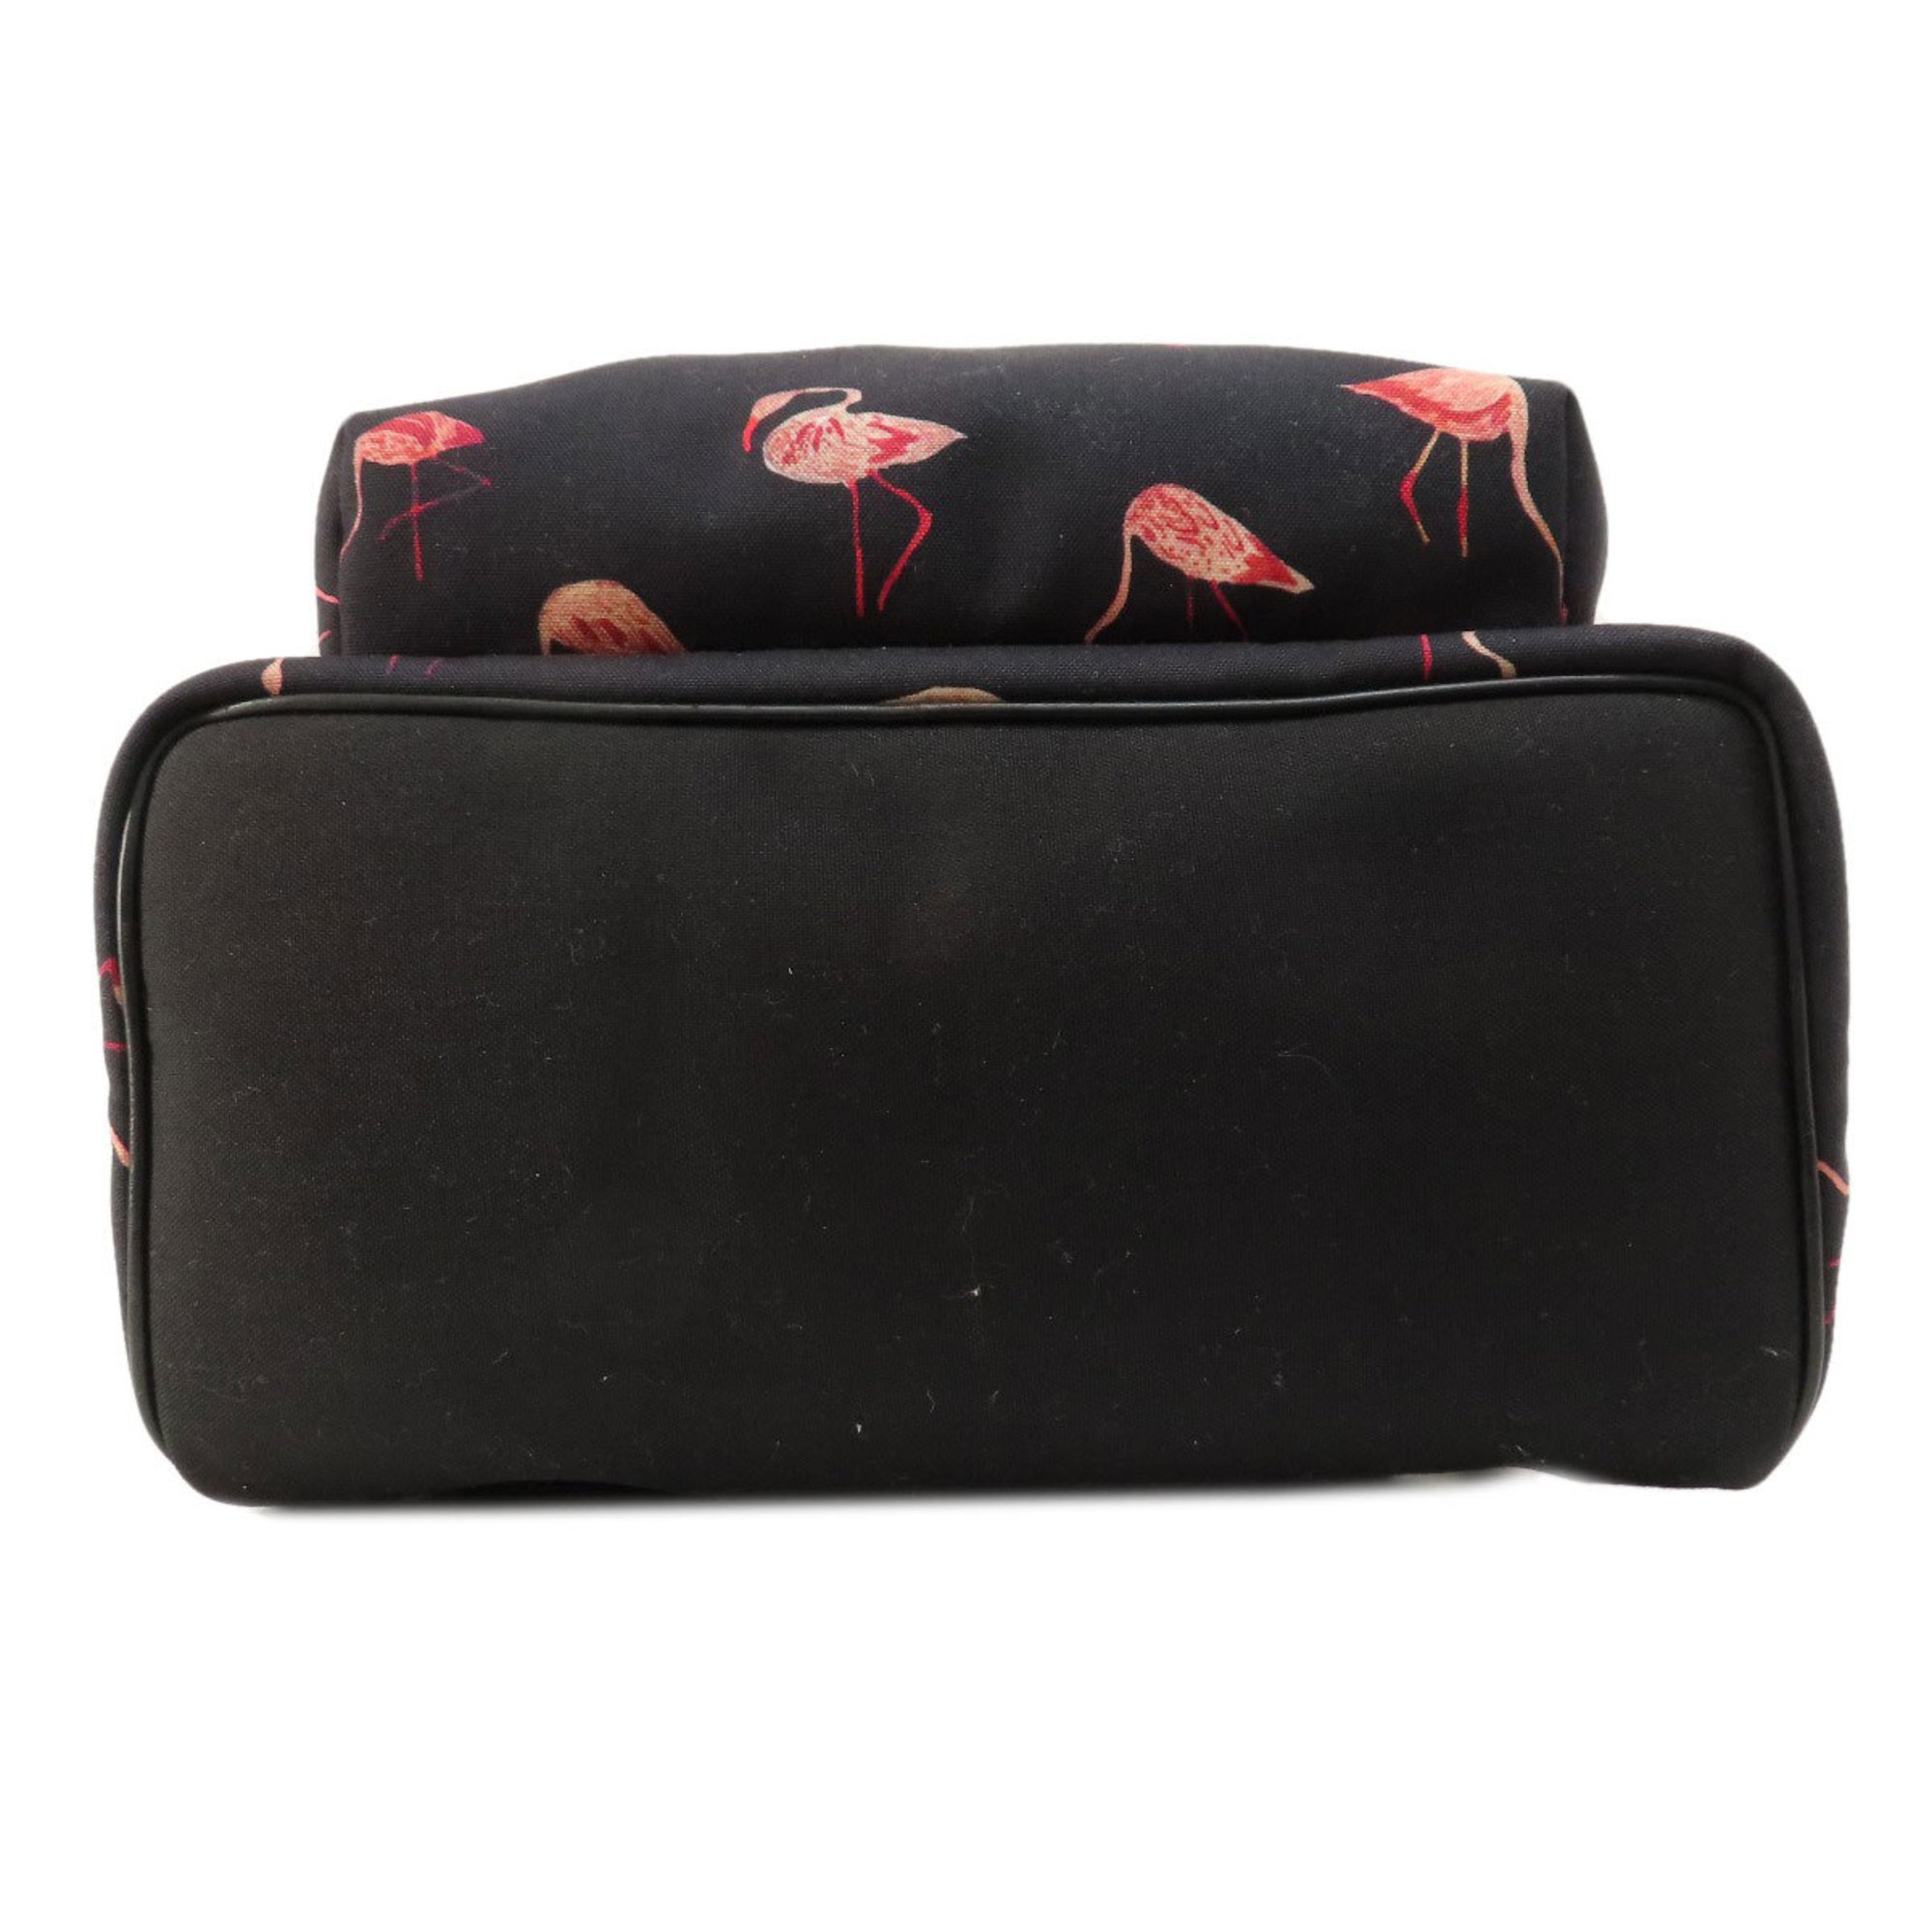 Saint Laurent Flamingo Motif Backpack/Daypack Nylon Material Women's